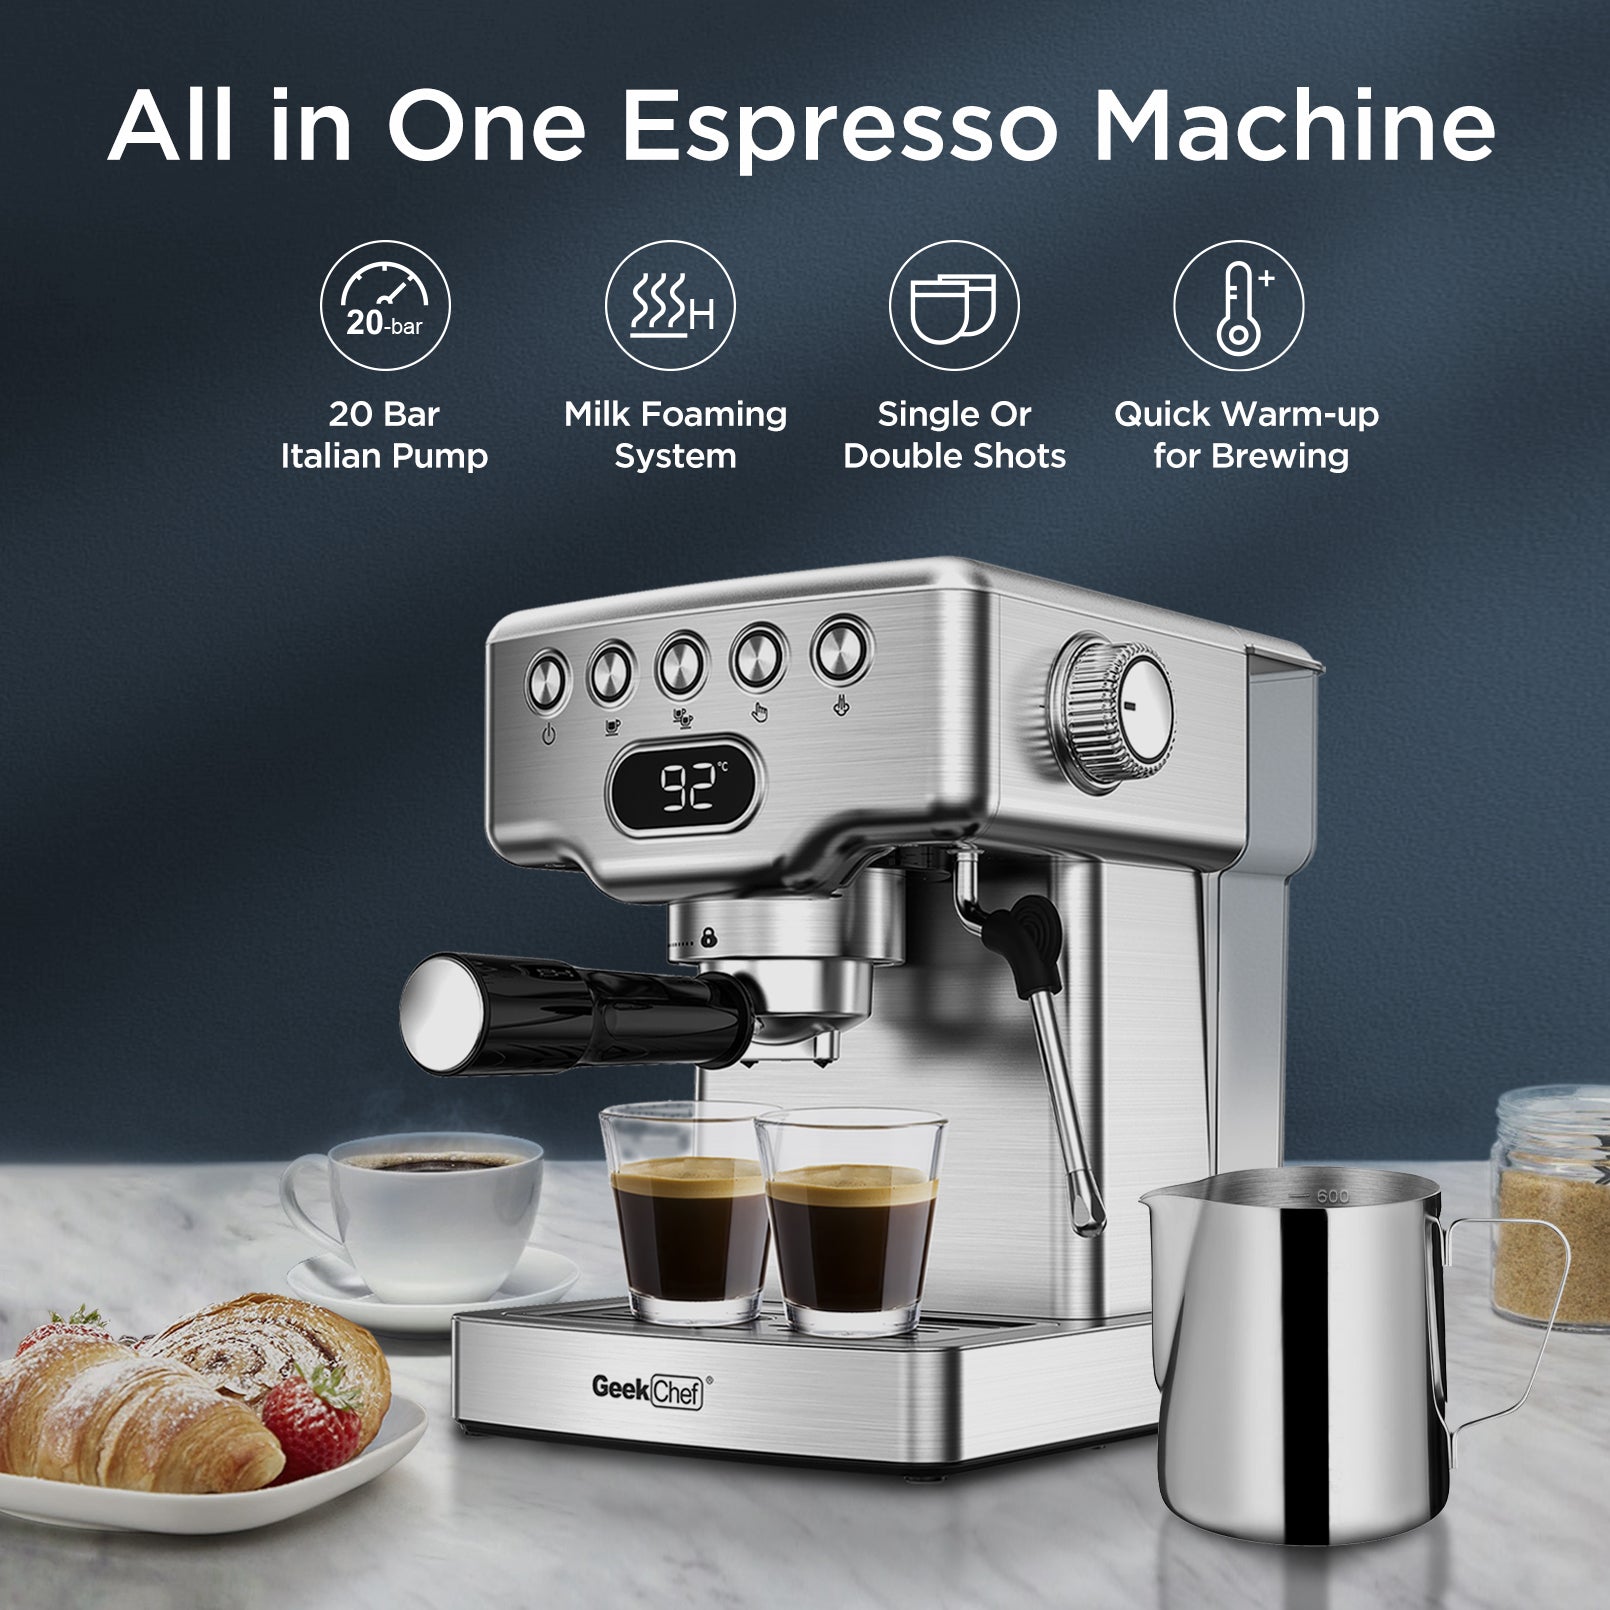 All in One Espresso Machine